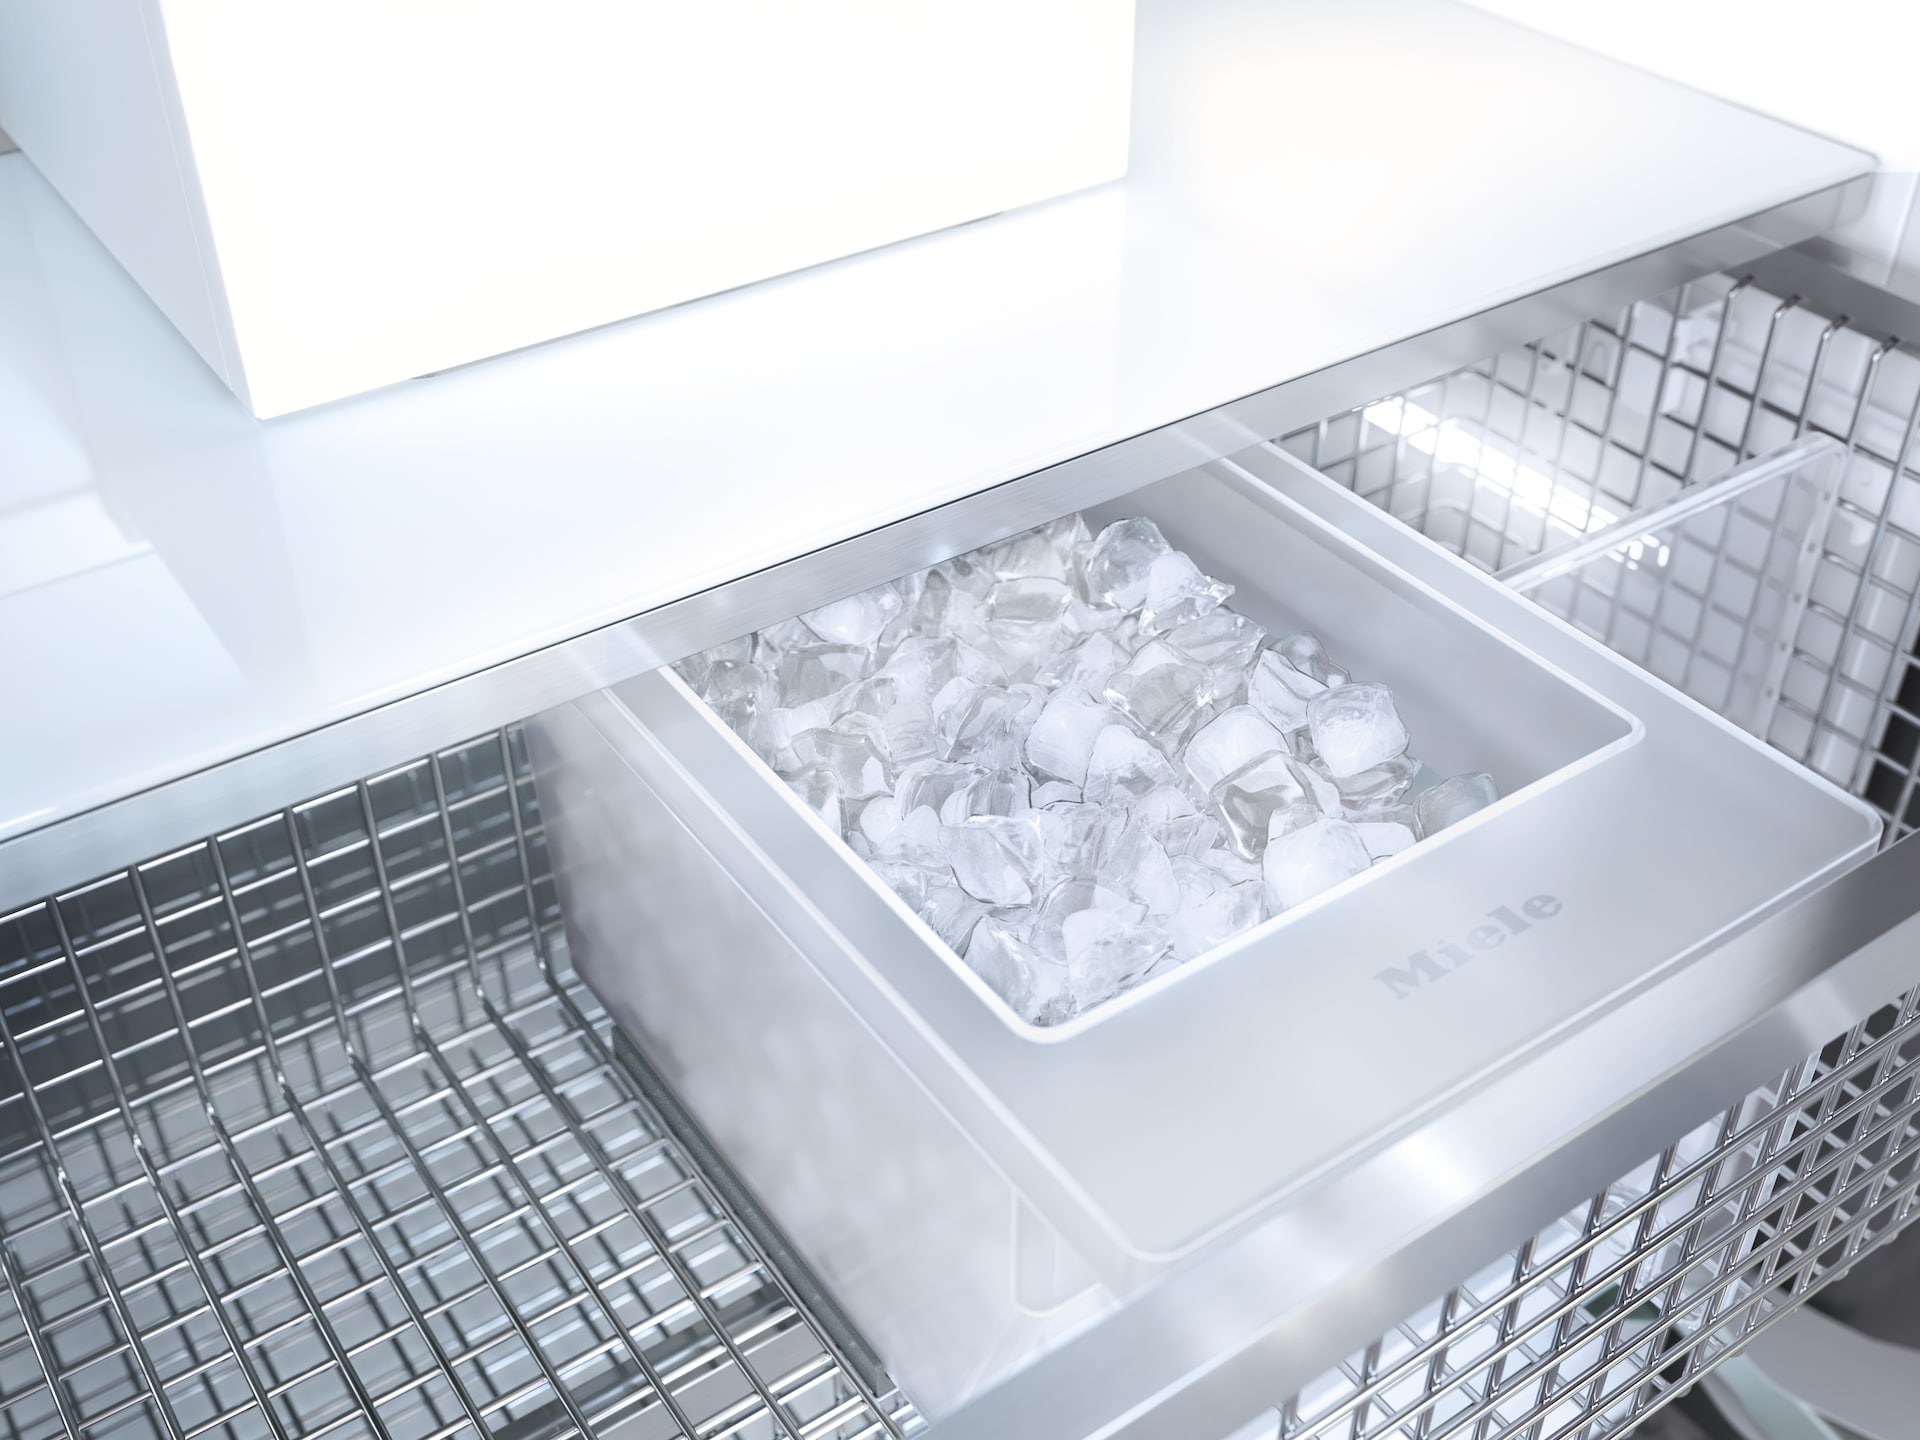 Refrigeration - F 2672 Vi - 7